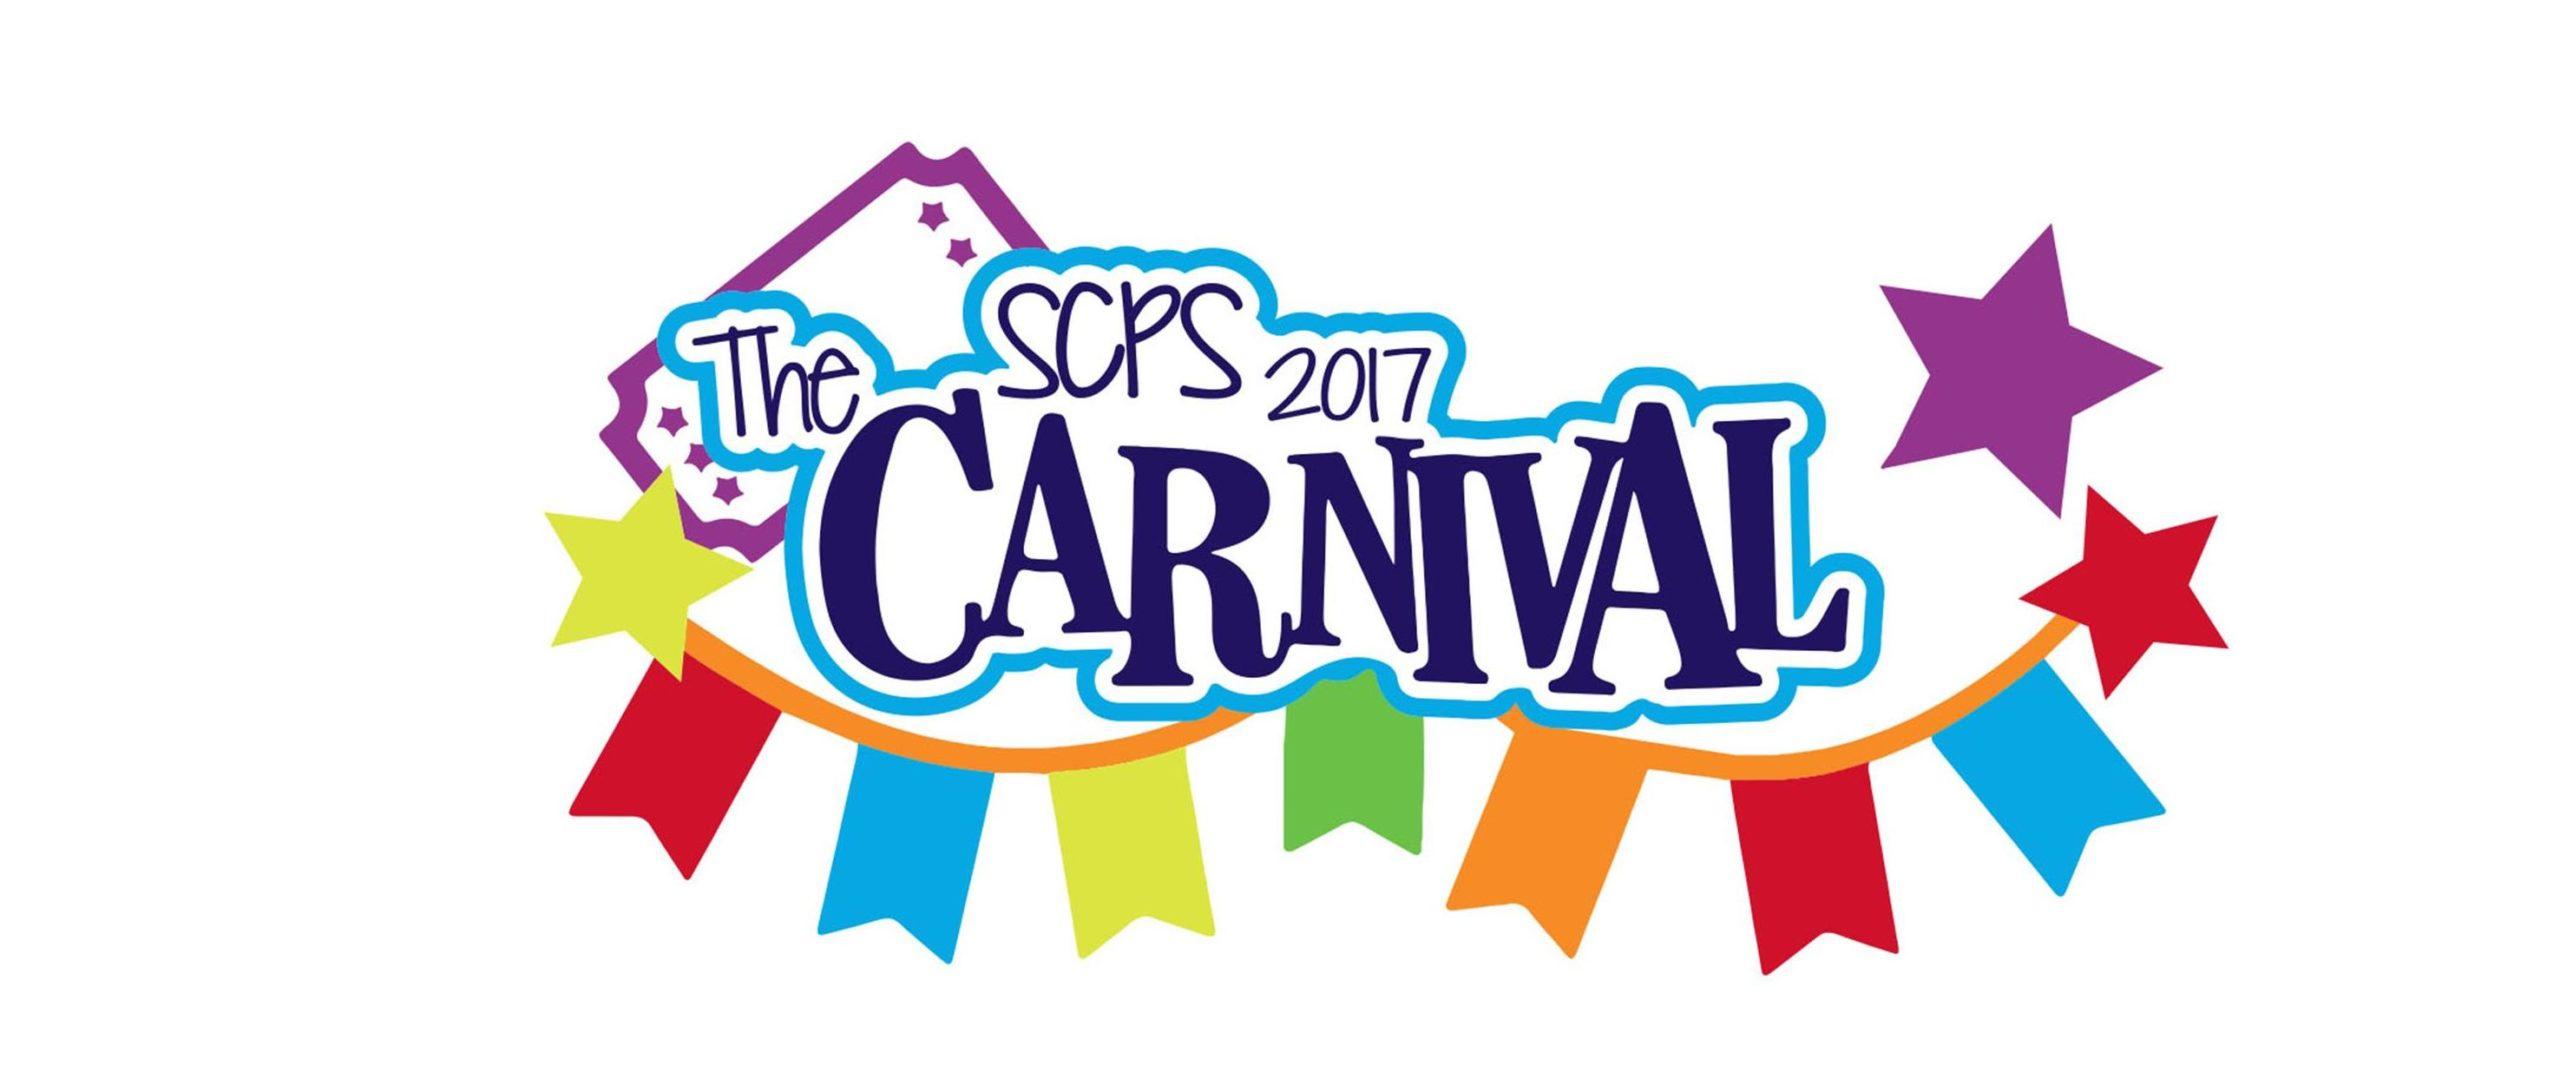 Carnival Logo - The Carnival logo Christian Preparatory School